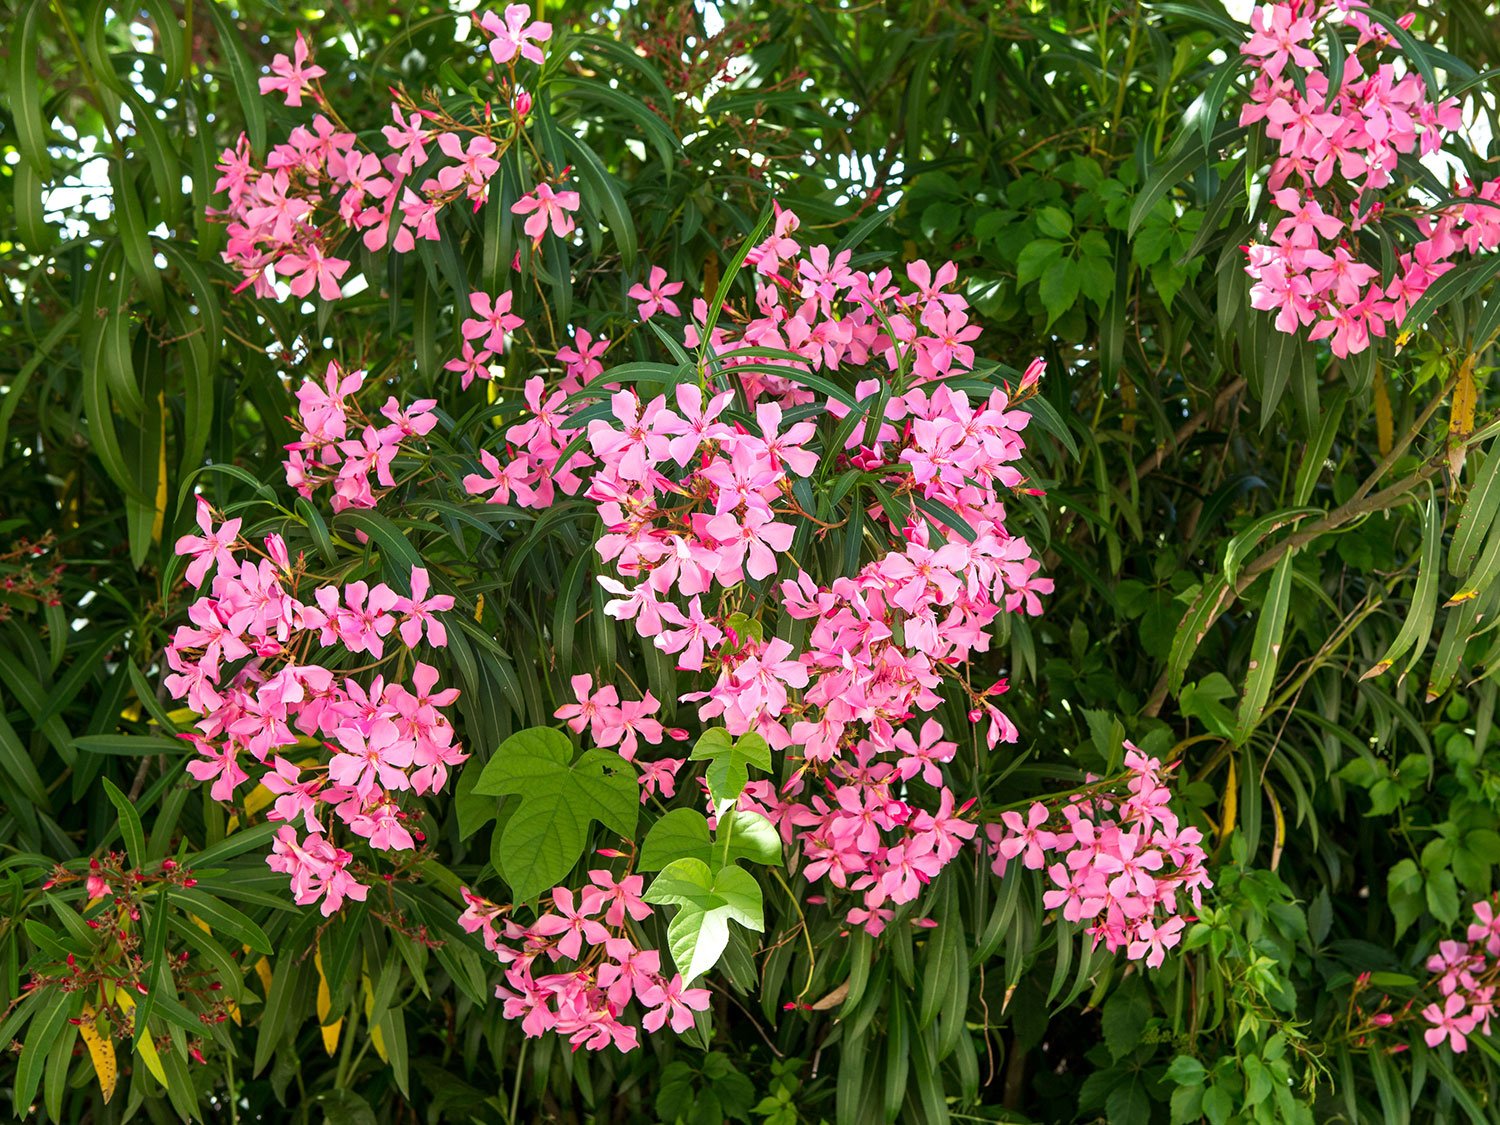 Un laurier rose en pleine floraison dans un jardin